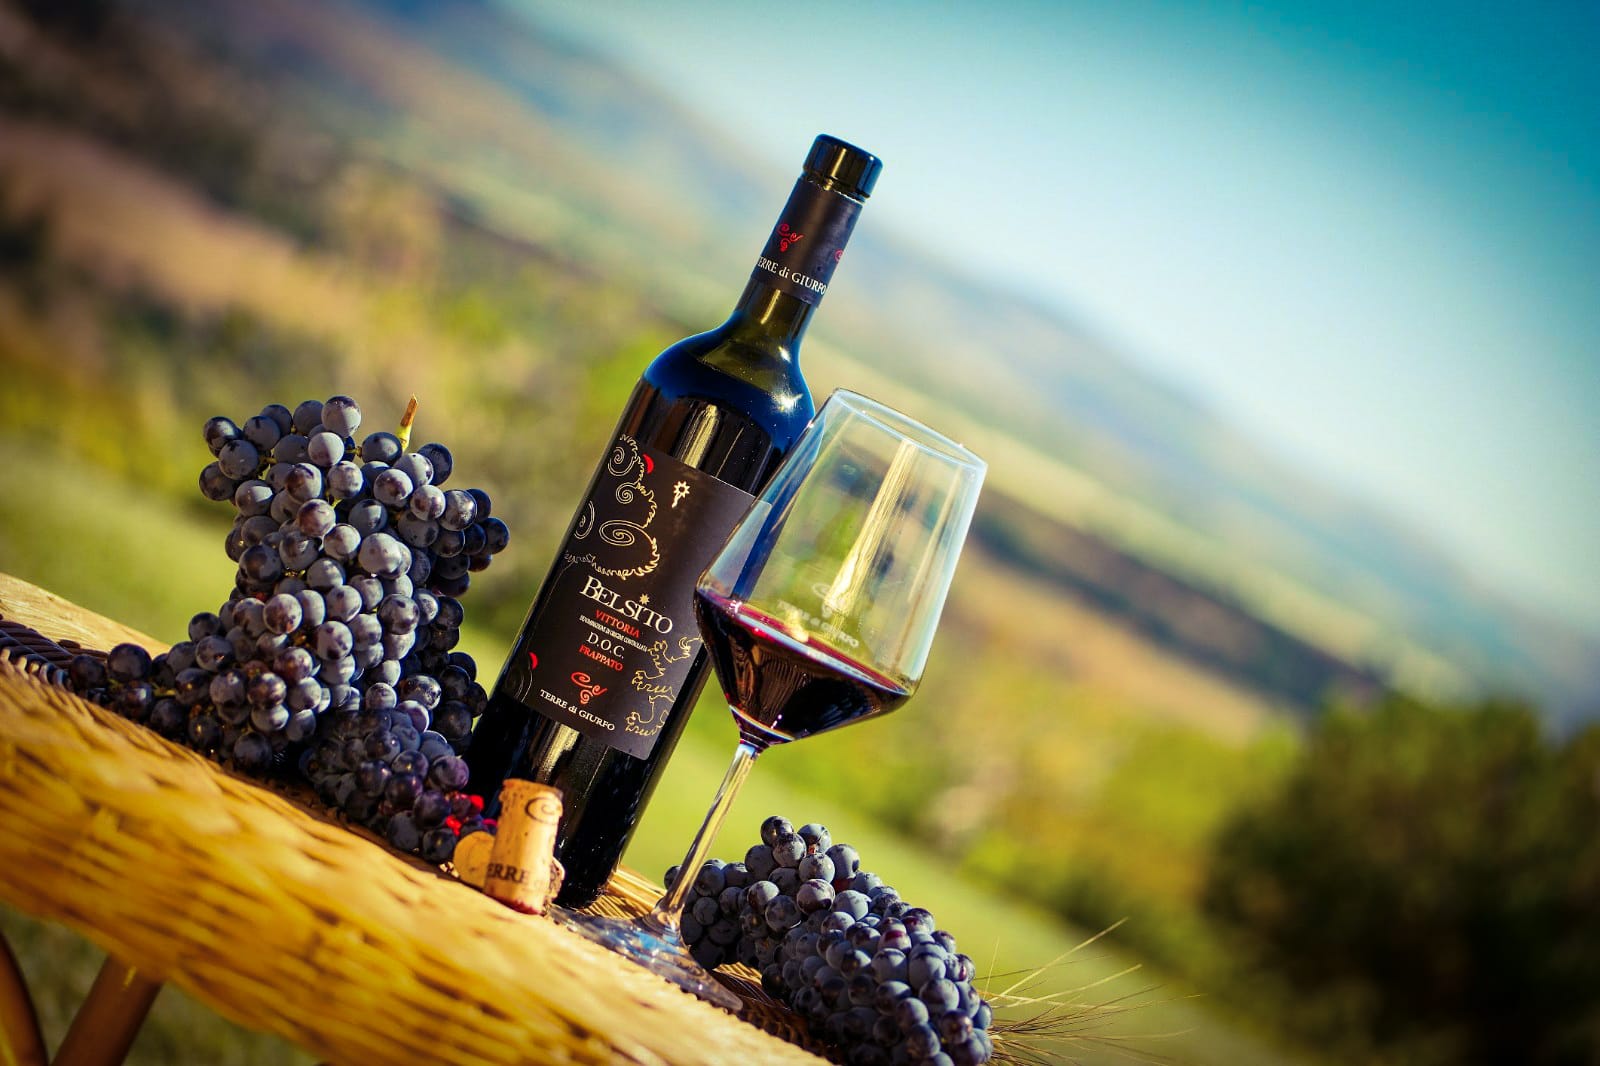 Frappato Belsito 2020 Terre di Giurfo Uno splendido vino rosso siciliano